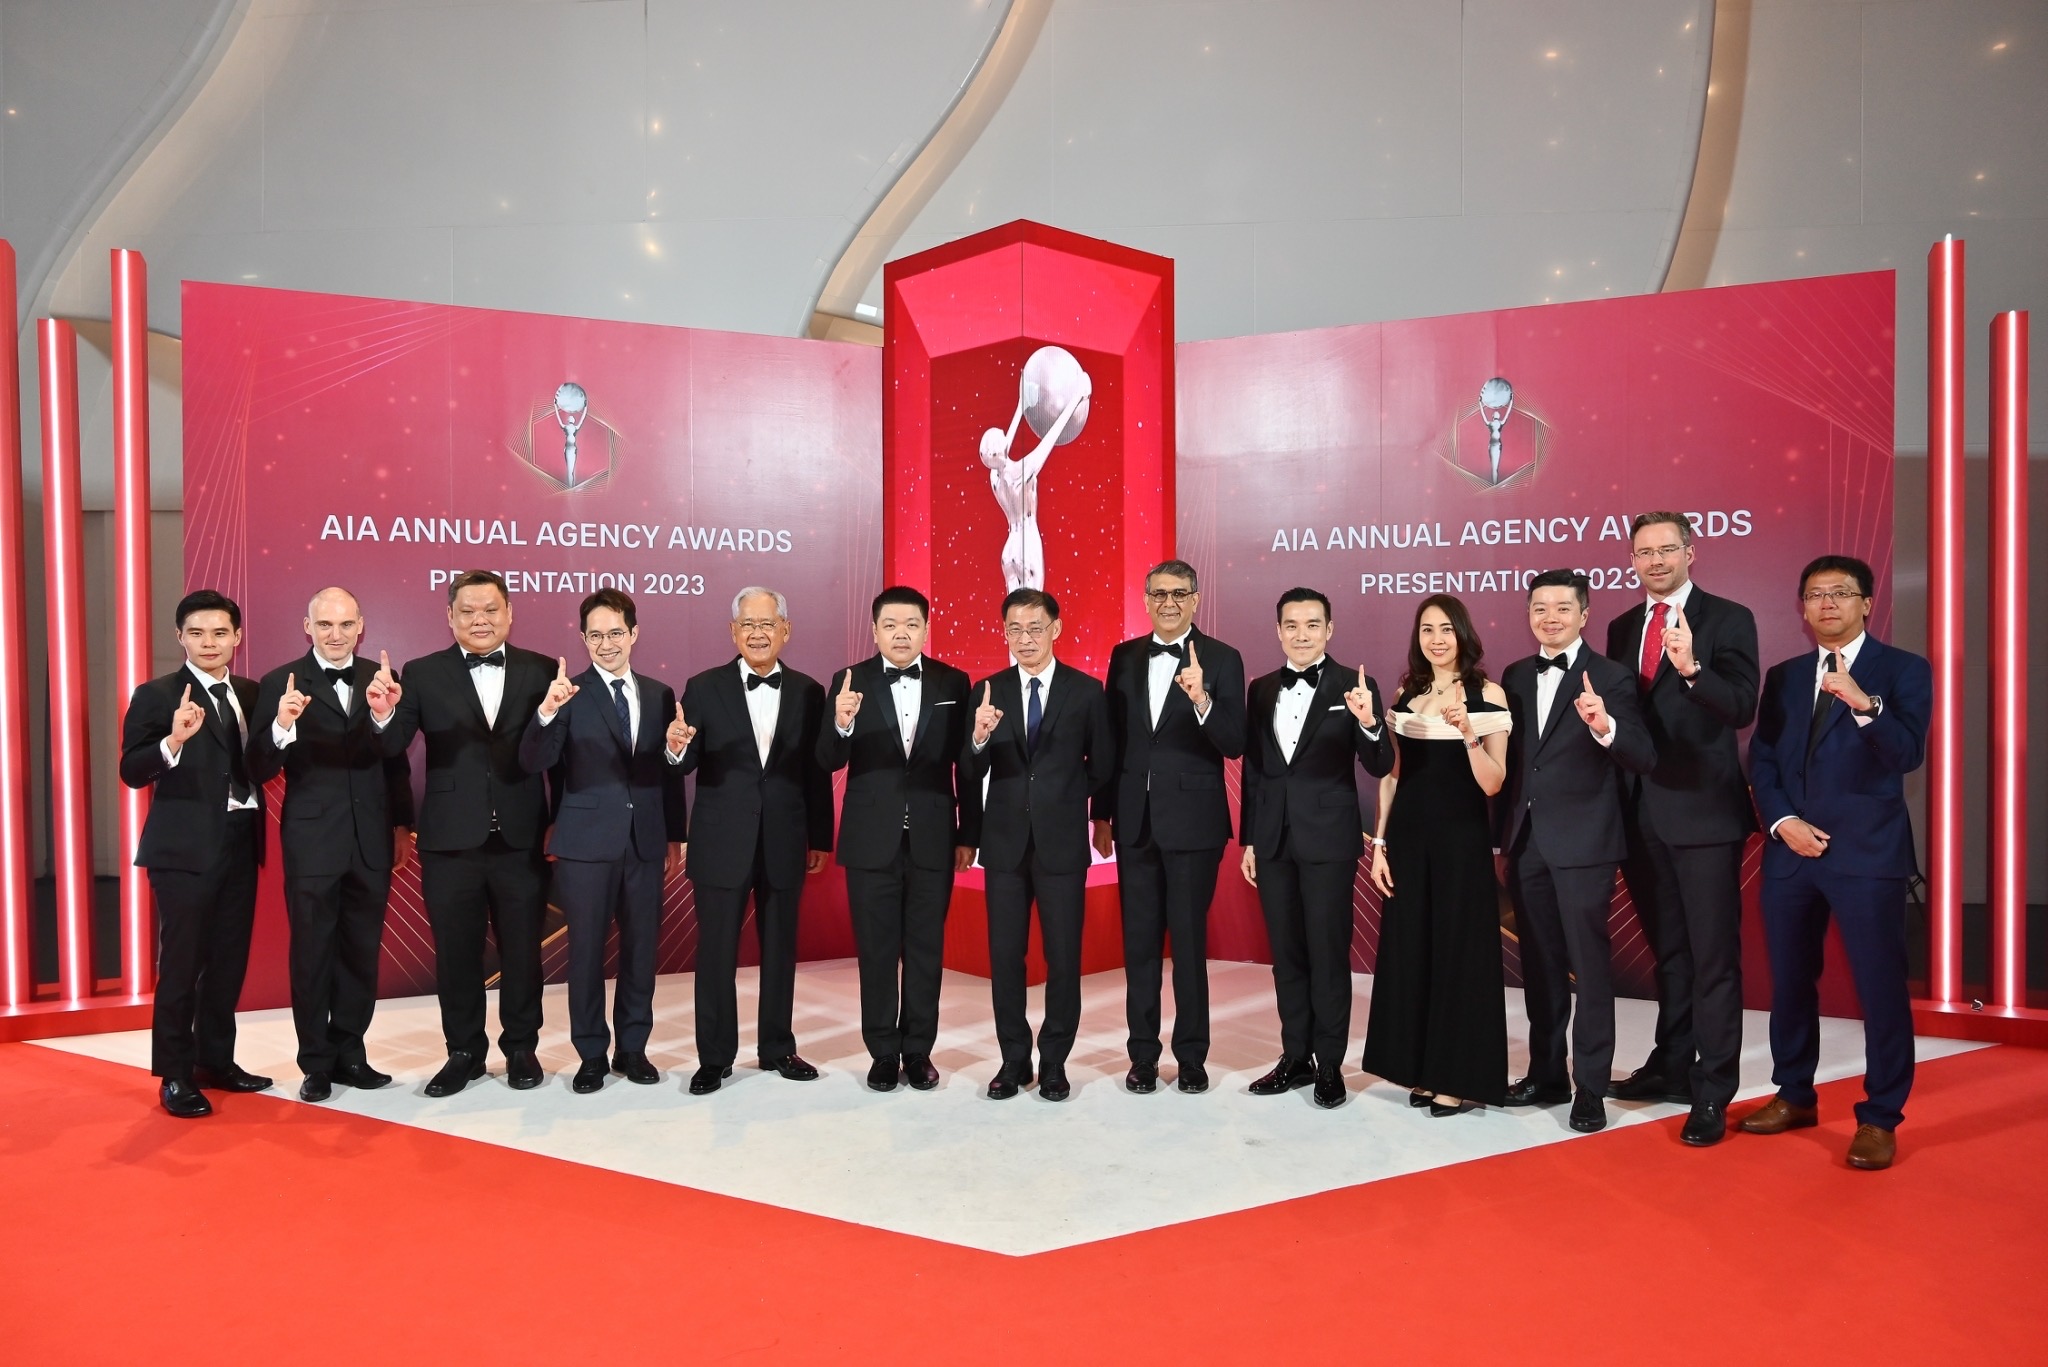 เอไอเอ ประเทศไทย มอบรางวัลเกียรติยศแก่สุดยอดตัวแทน “ที่สุดแห่งปี” ประจำปี 2566 ในงาน AIA Annual Agency AwardsPresentation2023